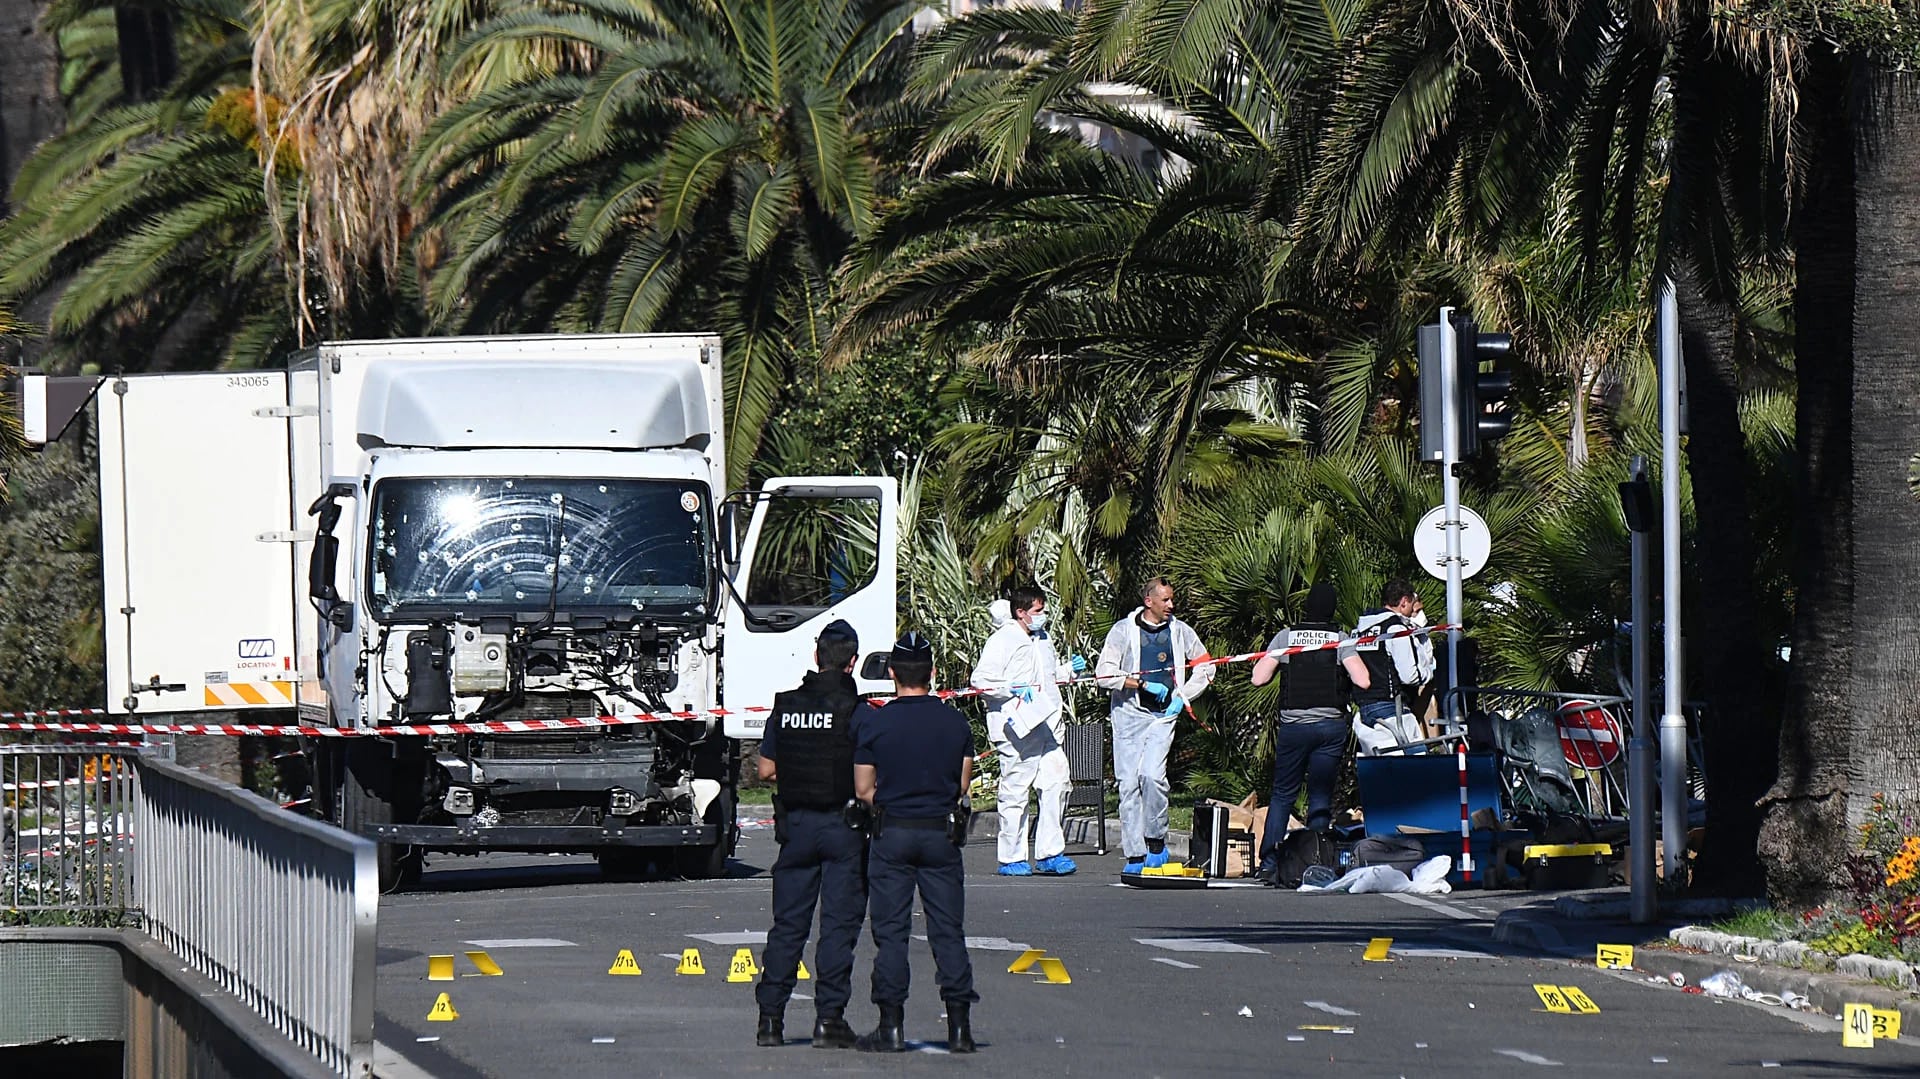 El atentado en Niza cometido por un radicalizado -según la policía francesa- fue reivindicado por ISIS (AFP)